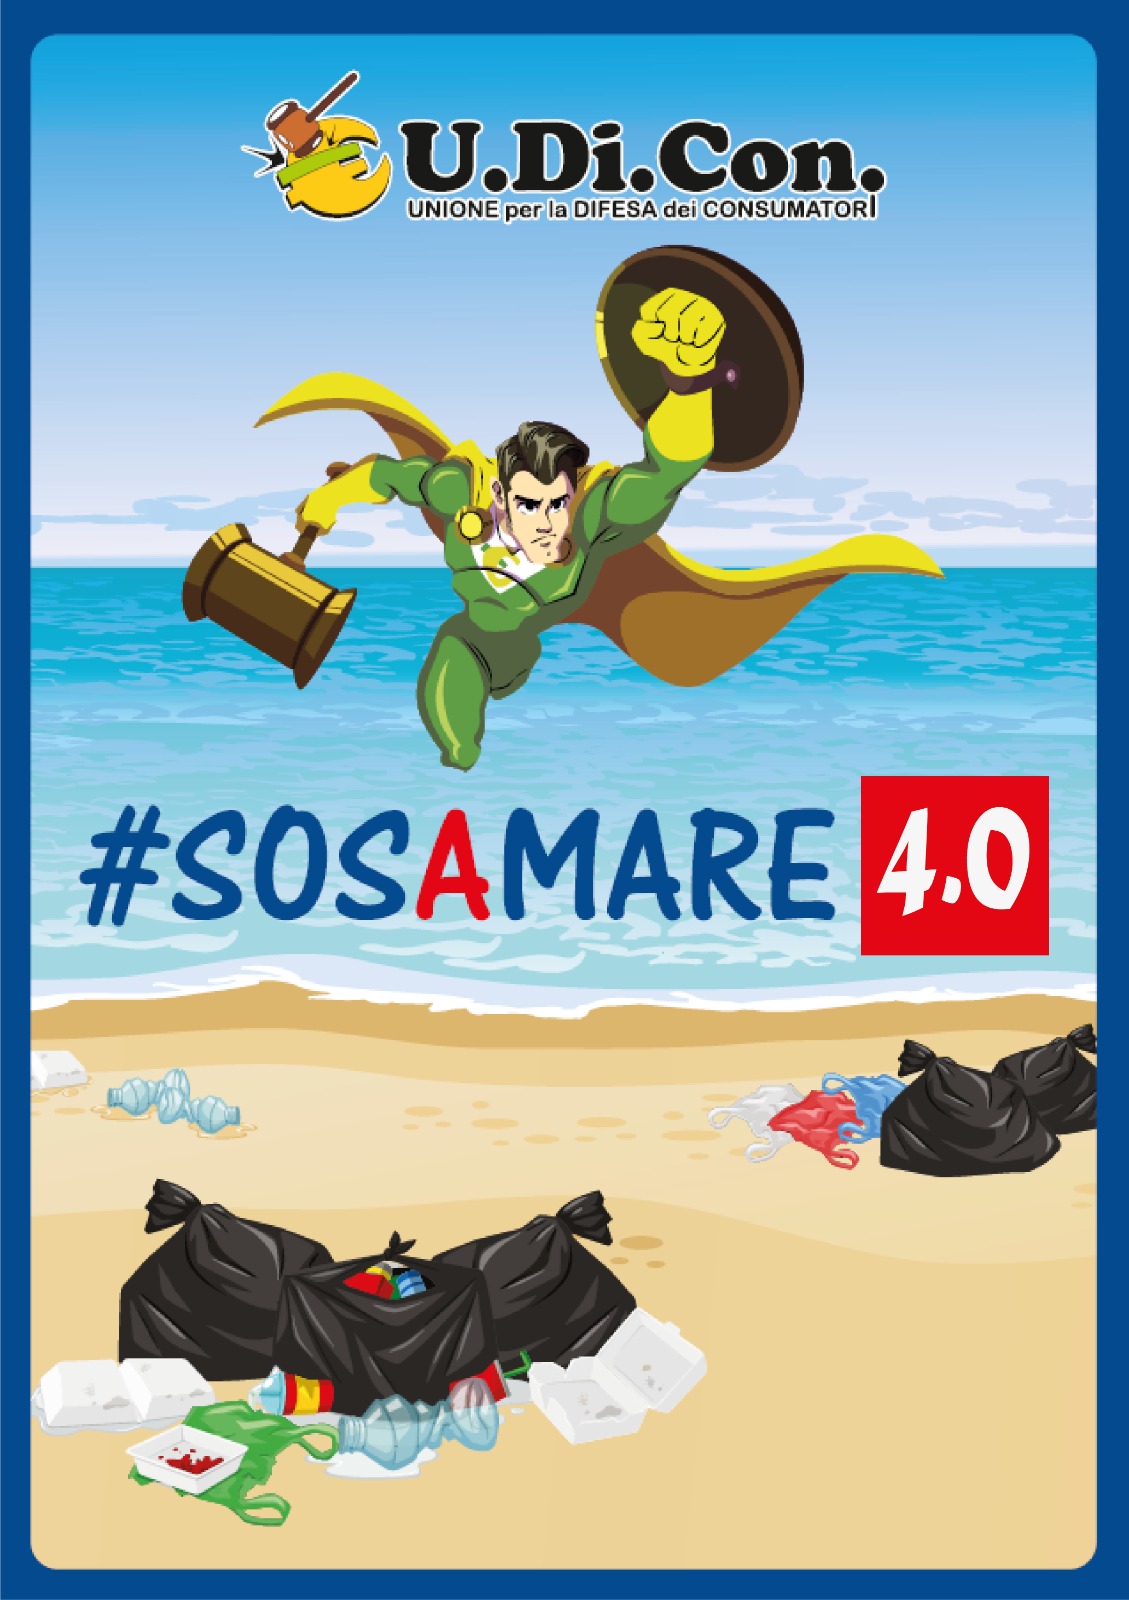 Roma: Udicon, #SOSAMARE 4.0″, per salvaguardare ambiente